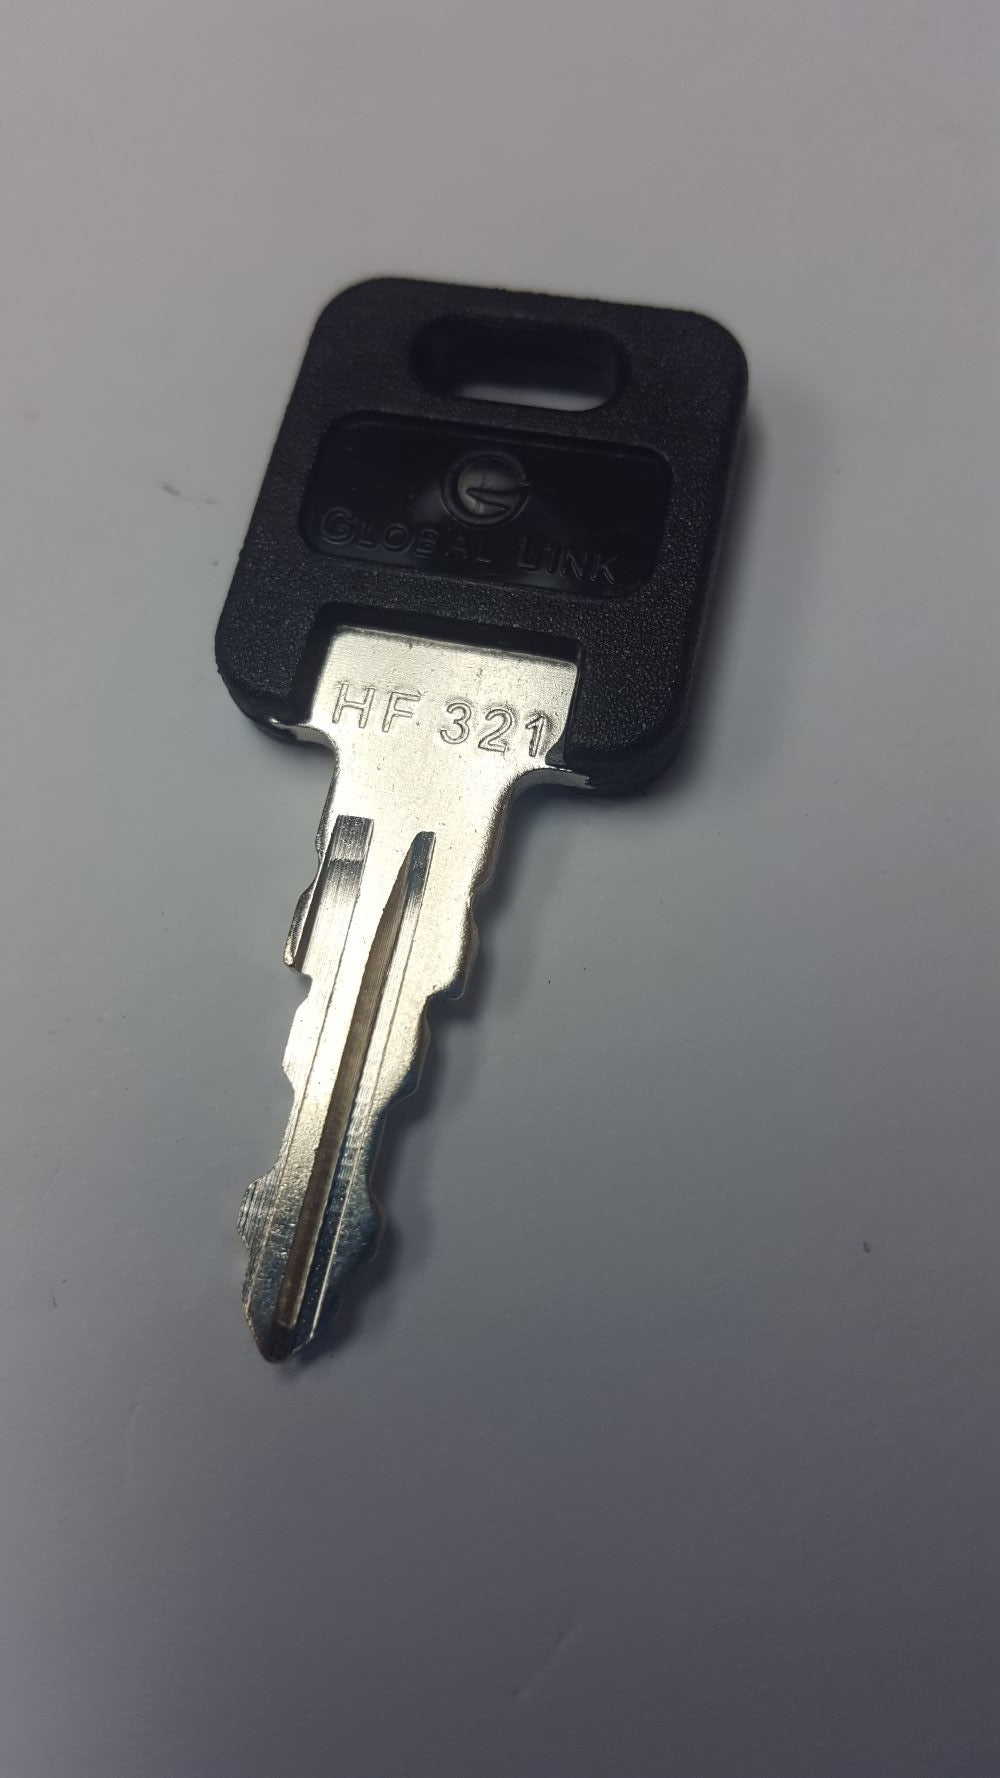 CPG KEY-HF-321 Pre-cut Stamped FIC Replacemnt HF321 Key